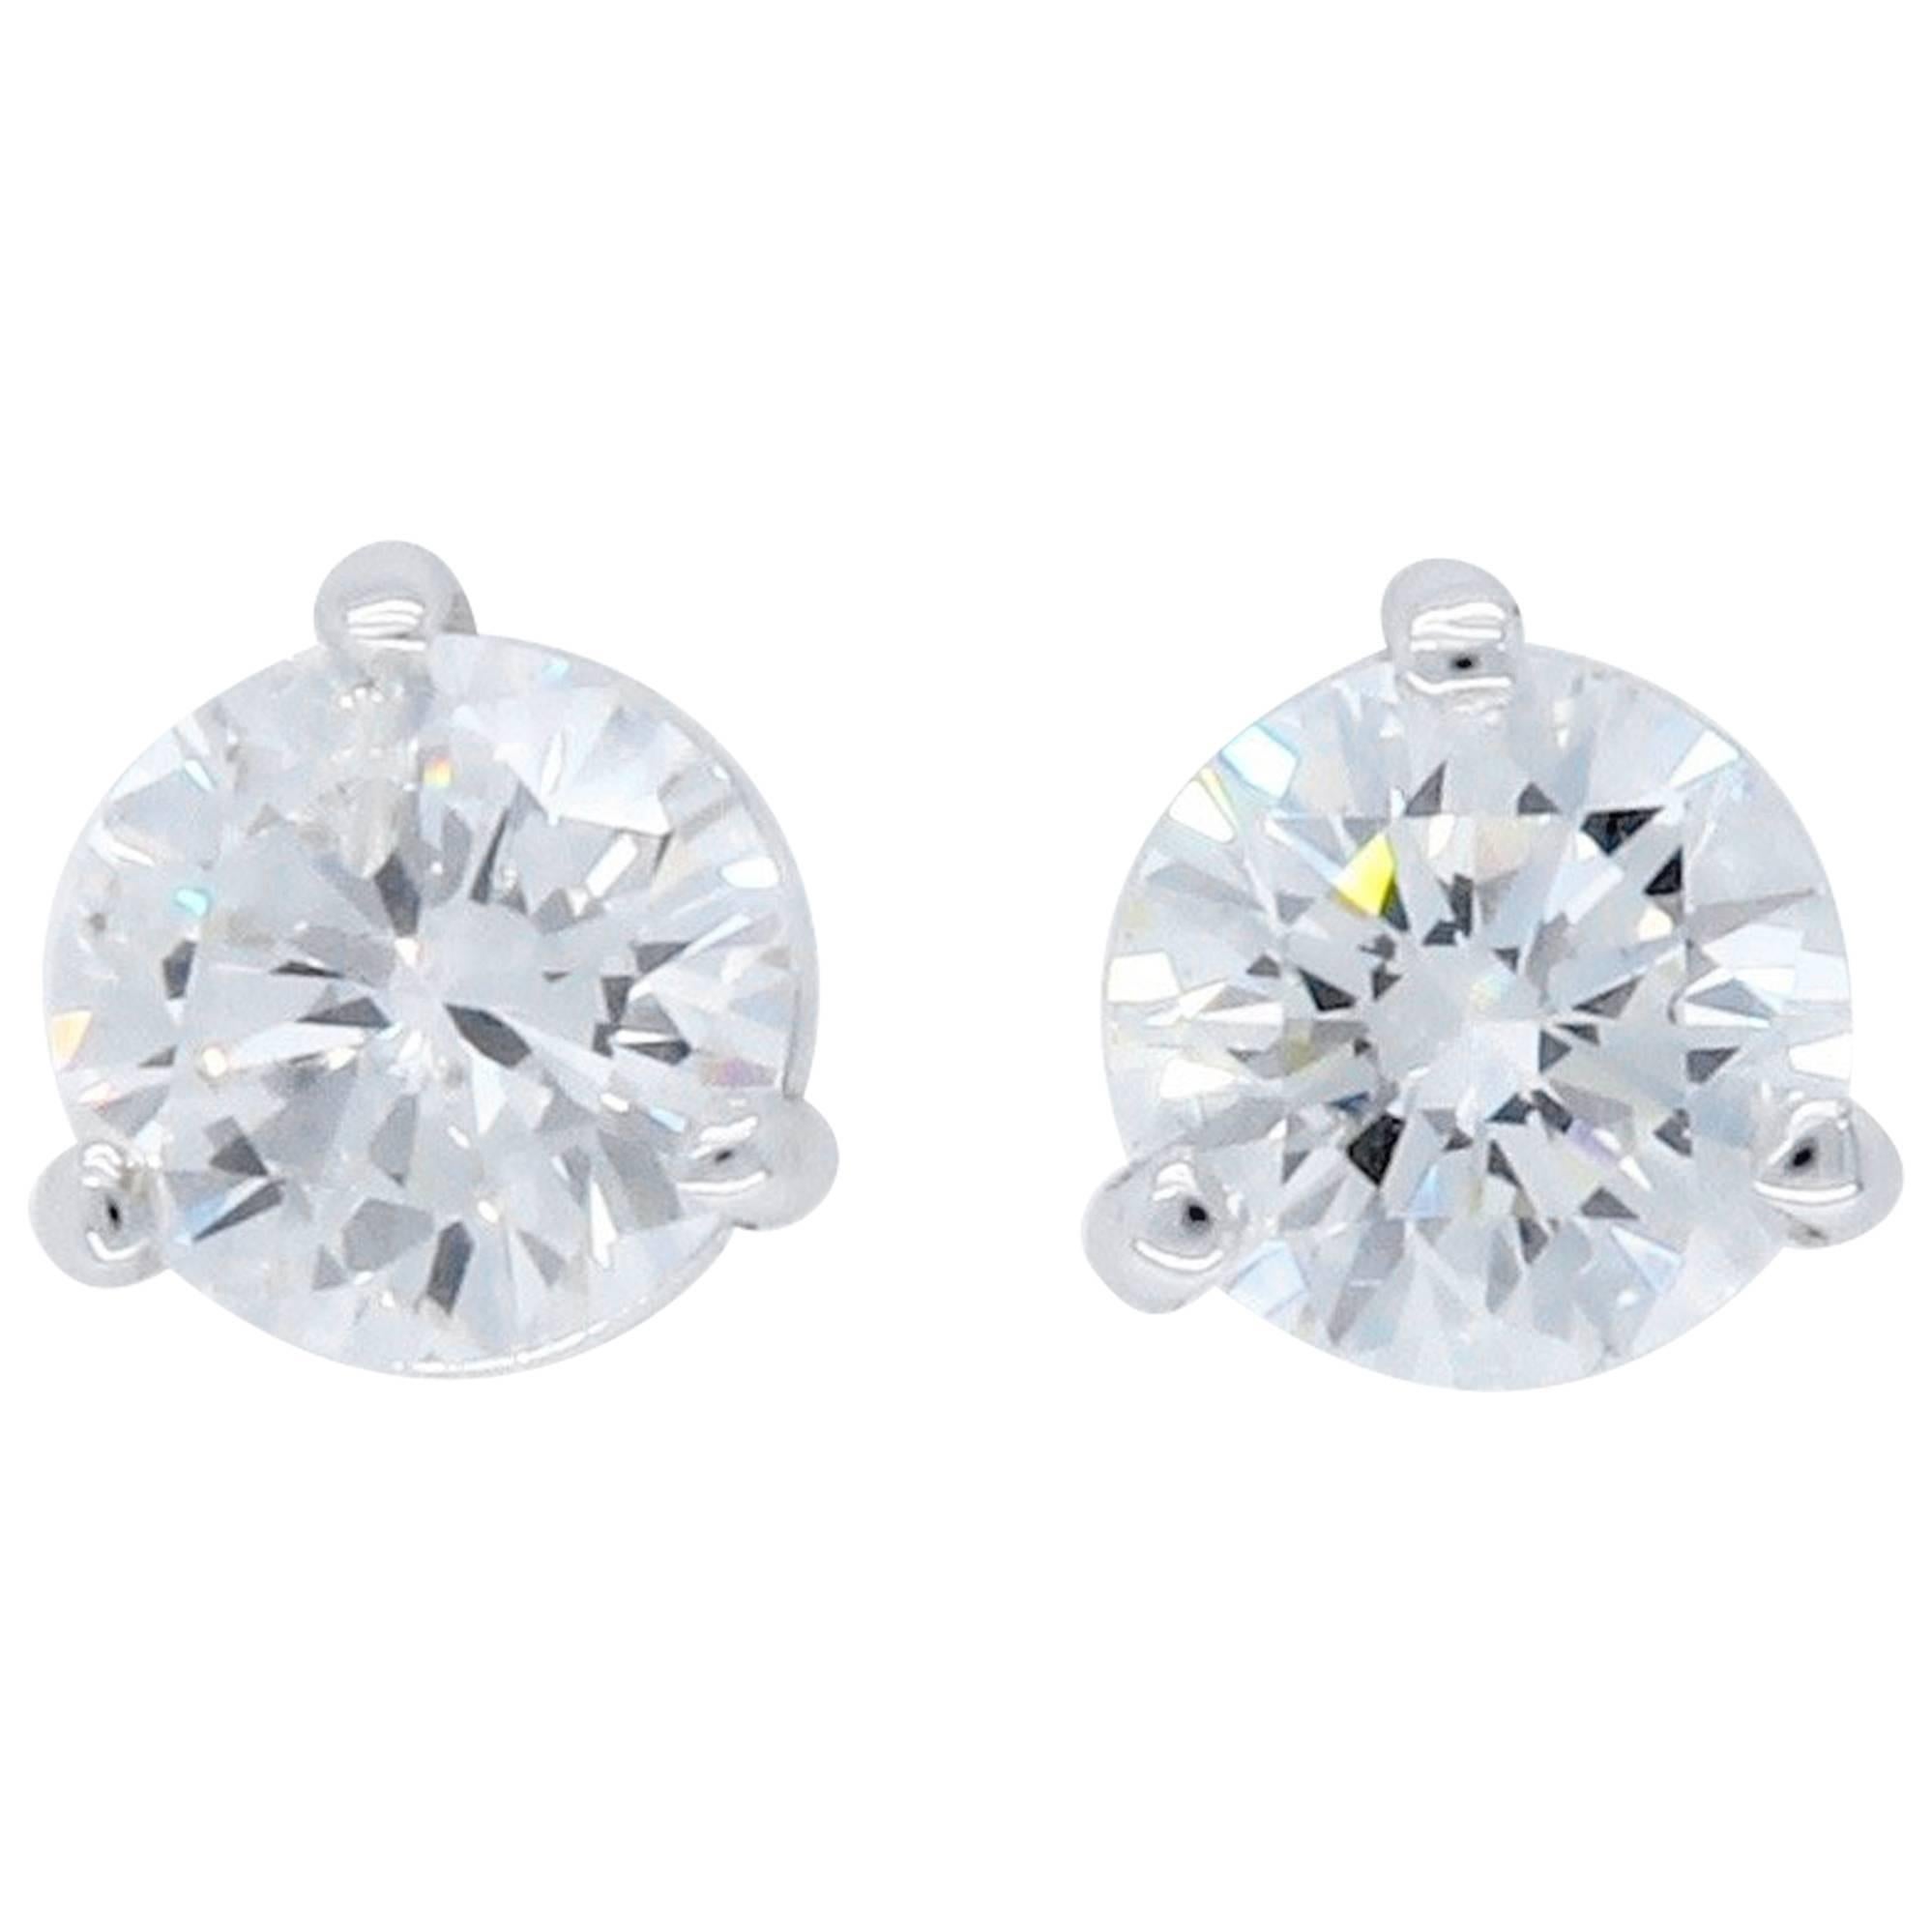 Martini Style Diamond Stud Earrings 